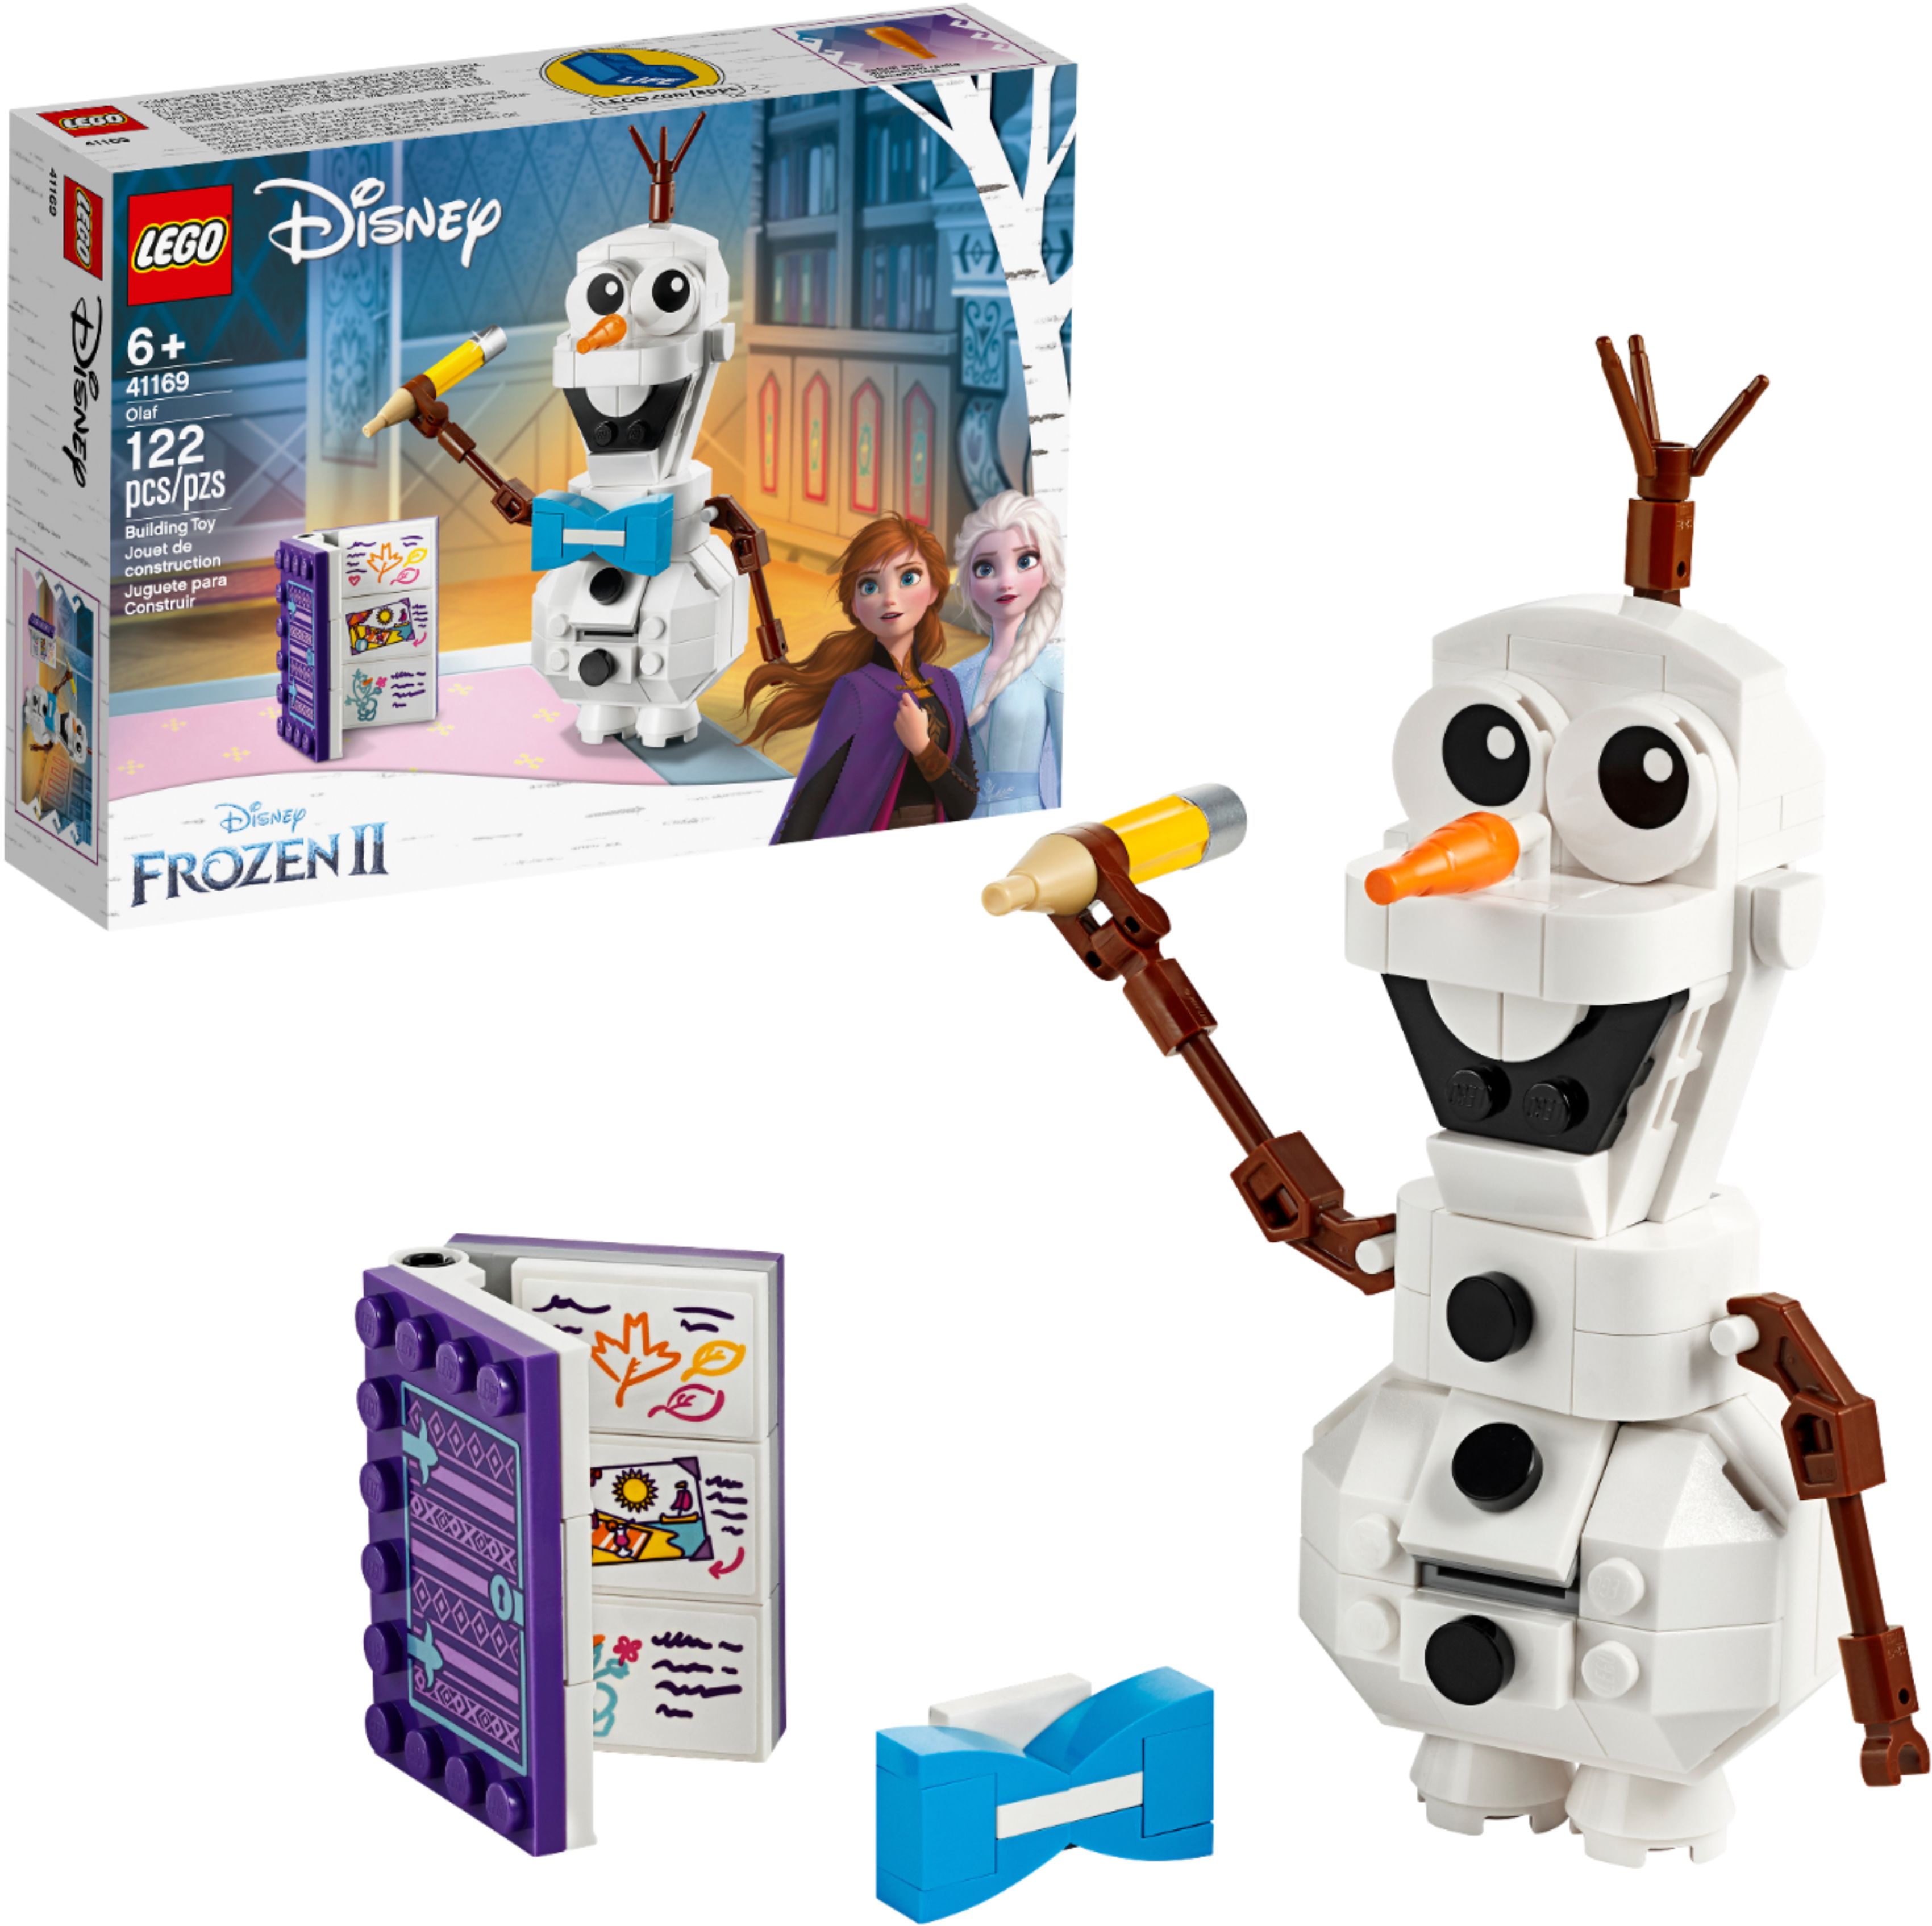 Customer Reviews: LEGO Disney Frozen II Olaf 41169 6283898 - Best Buy